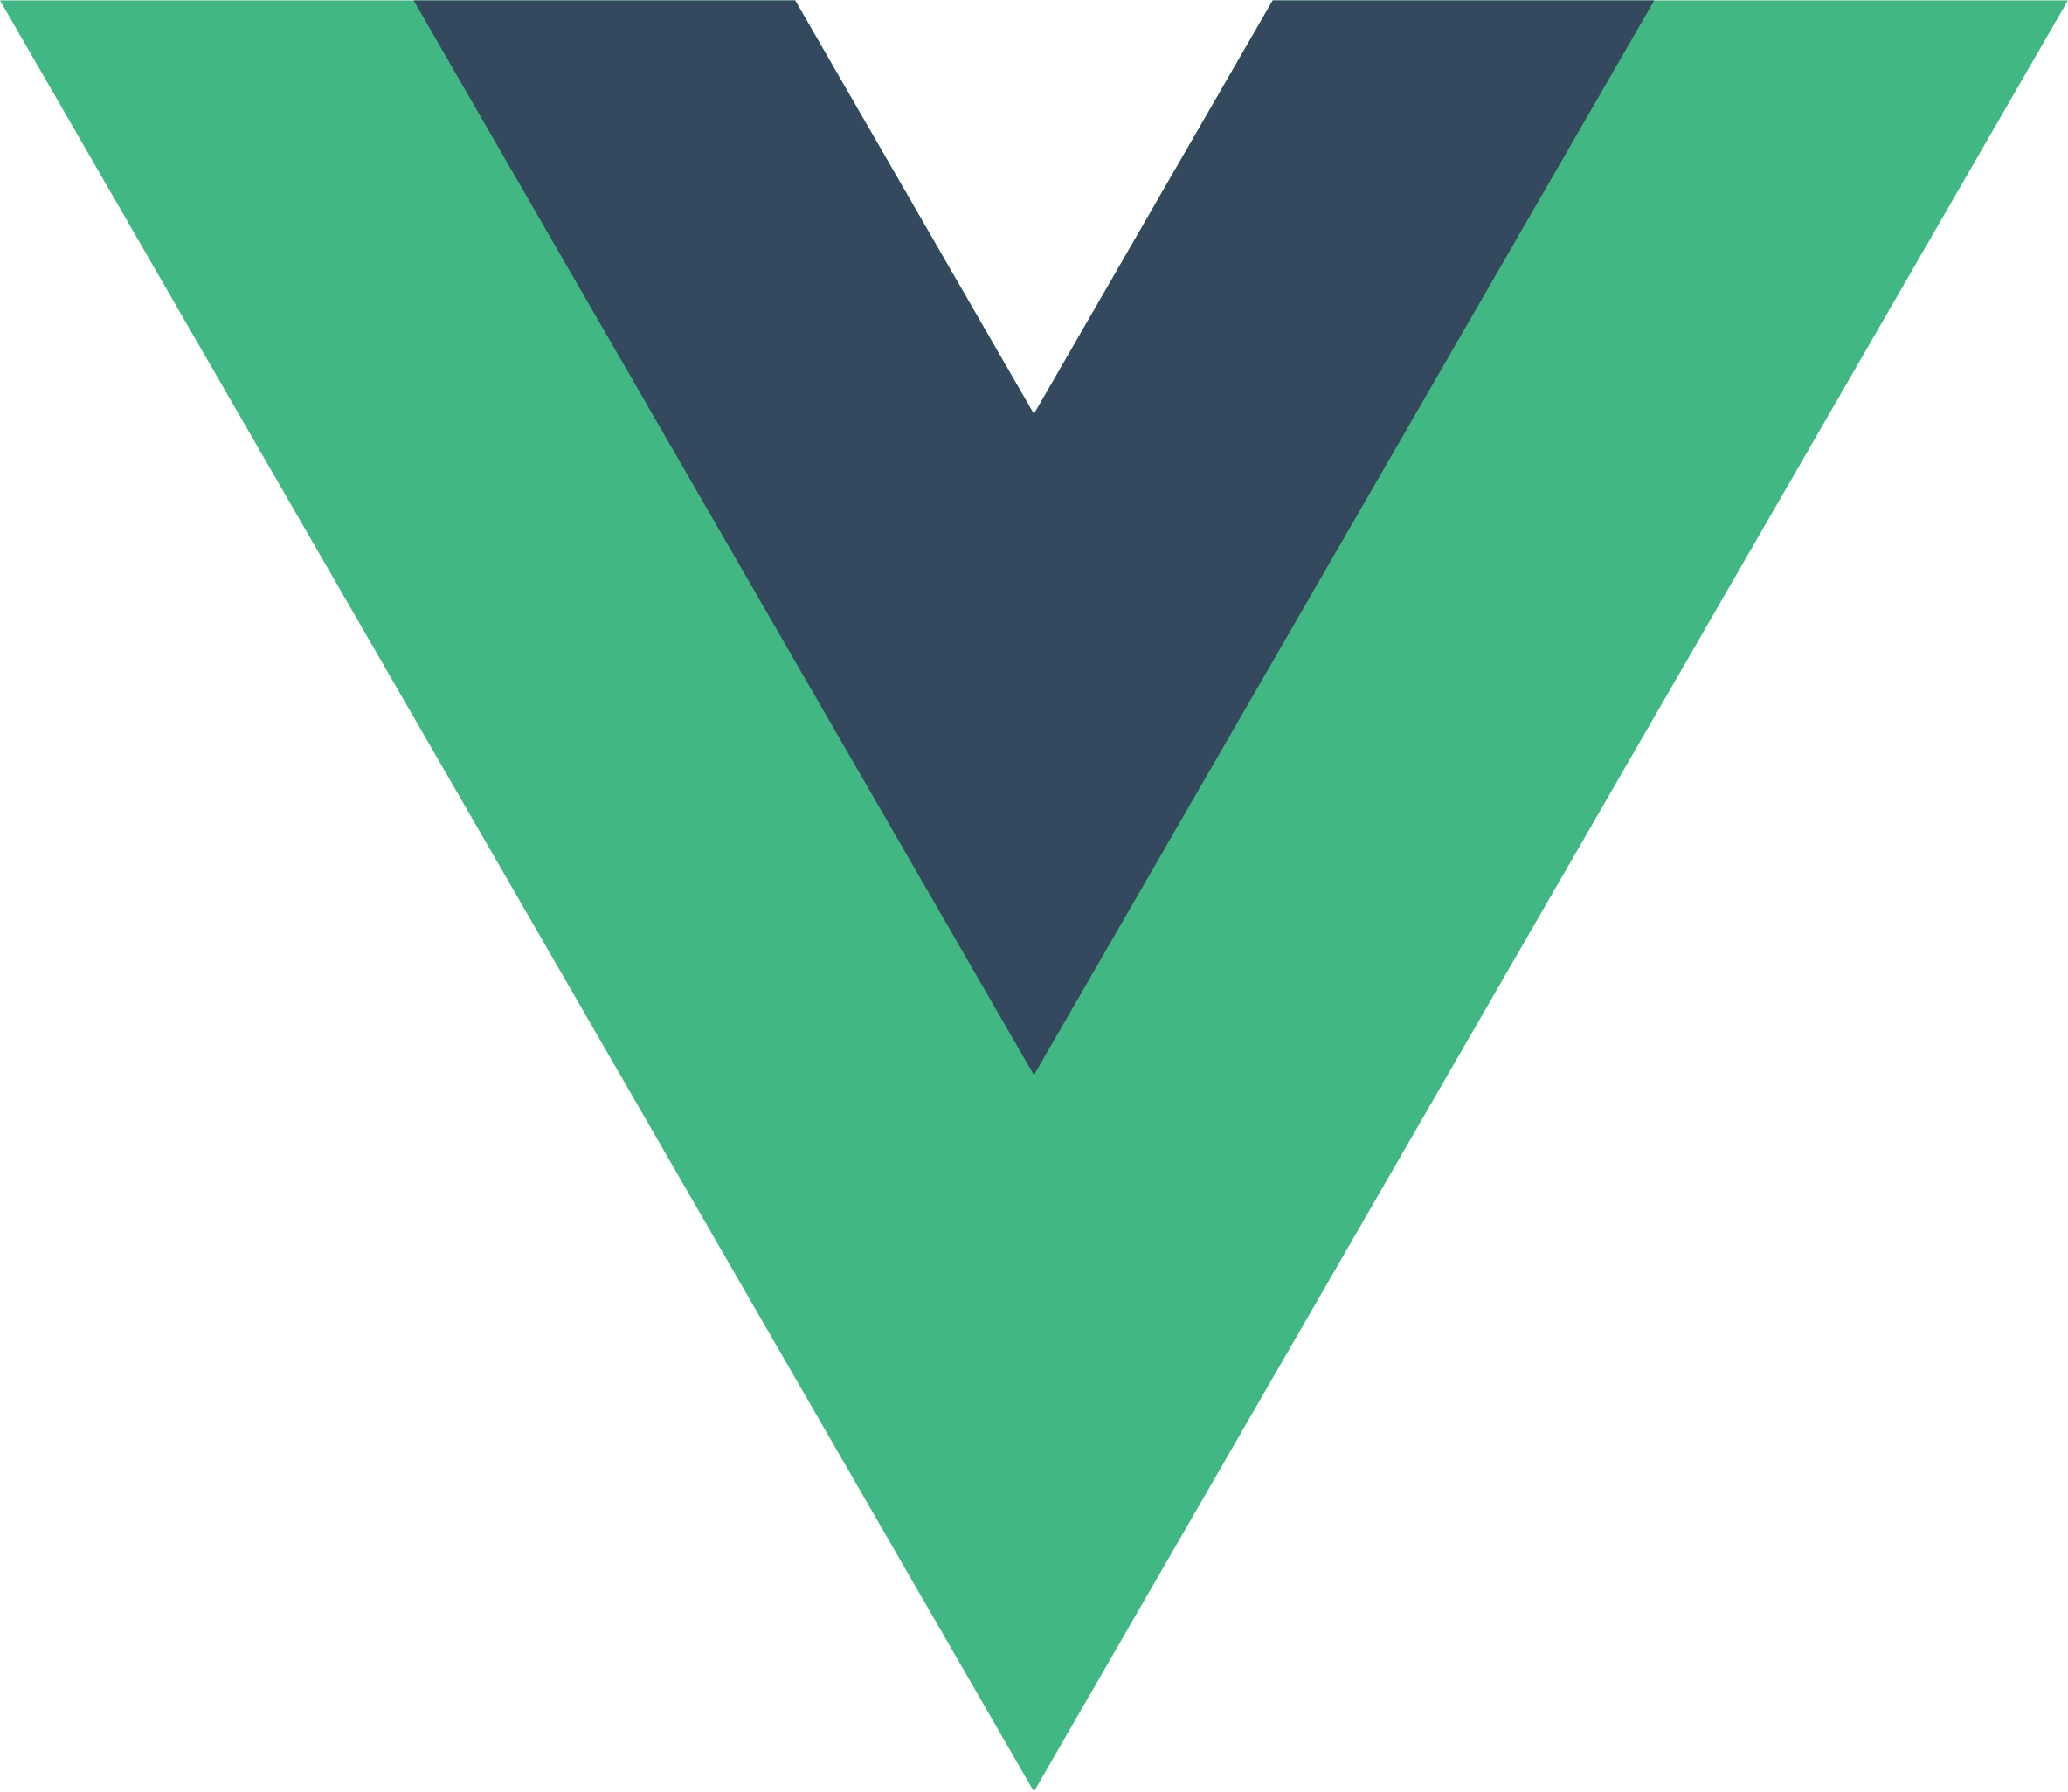 Vue-js_Logo_2-svg.png